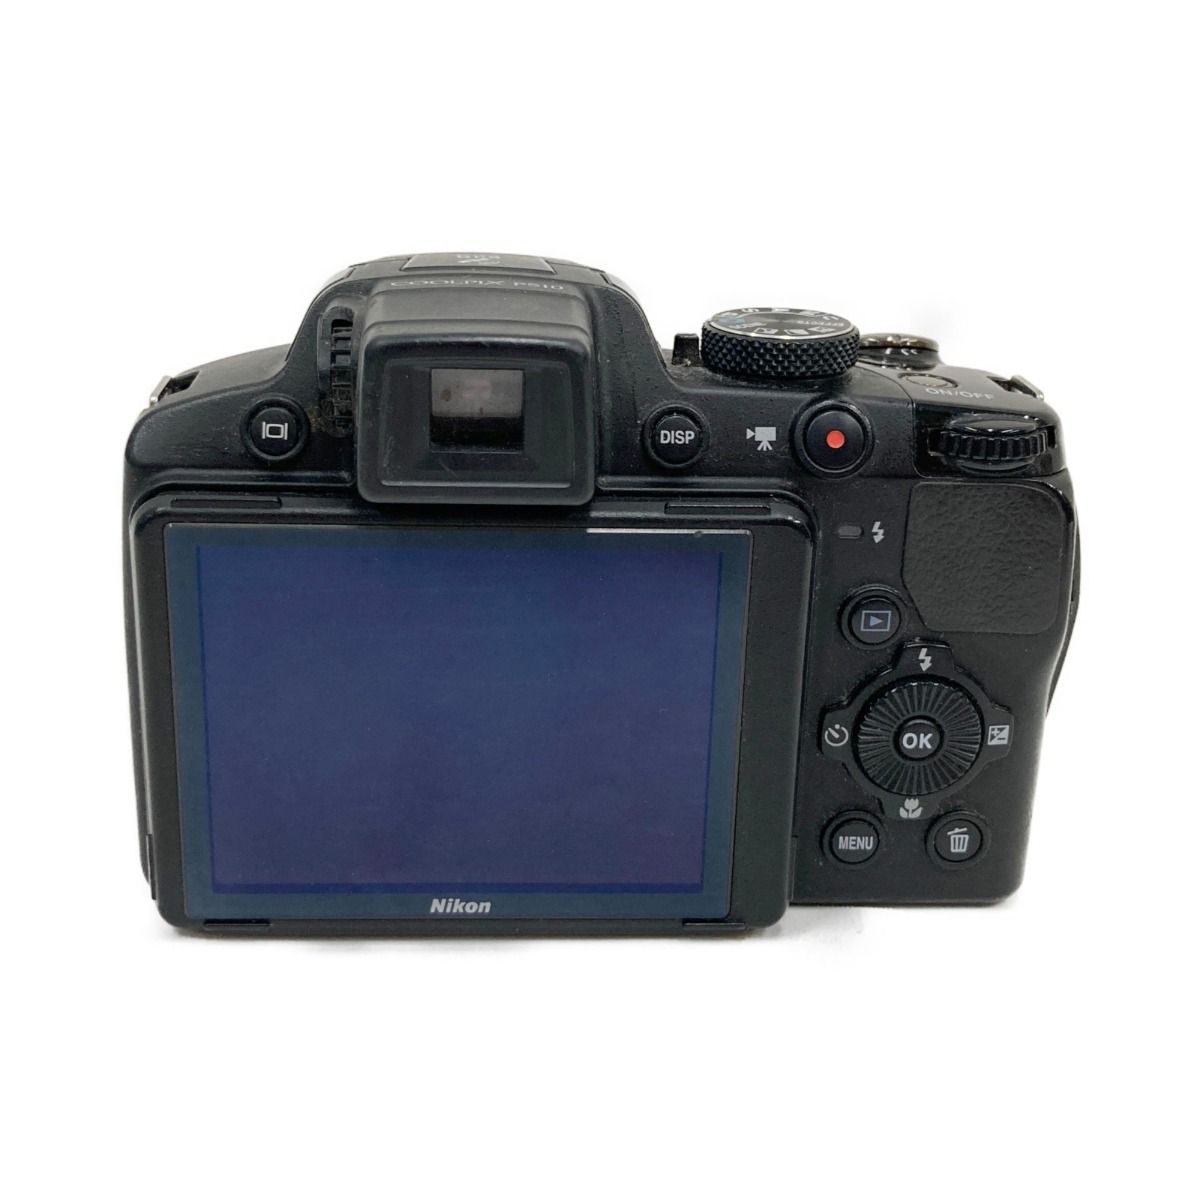 〇〇Nikon ニコン コンパクト デジタルカメラ COOLPIX P510 ブラック